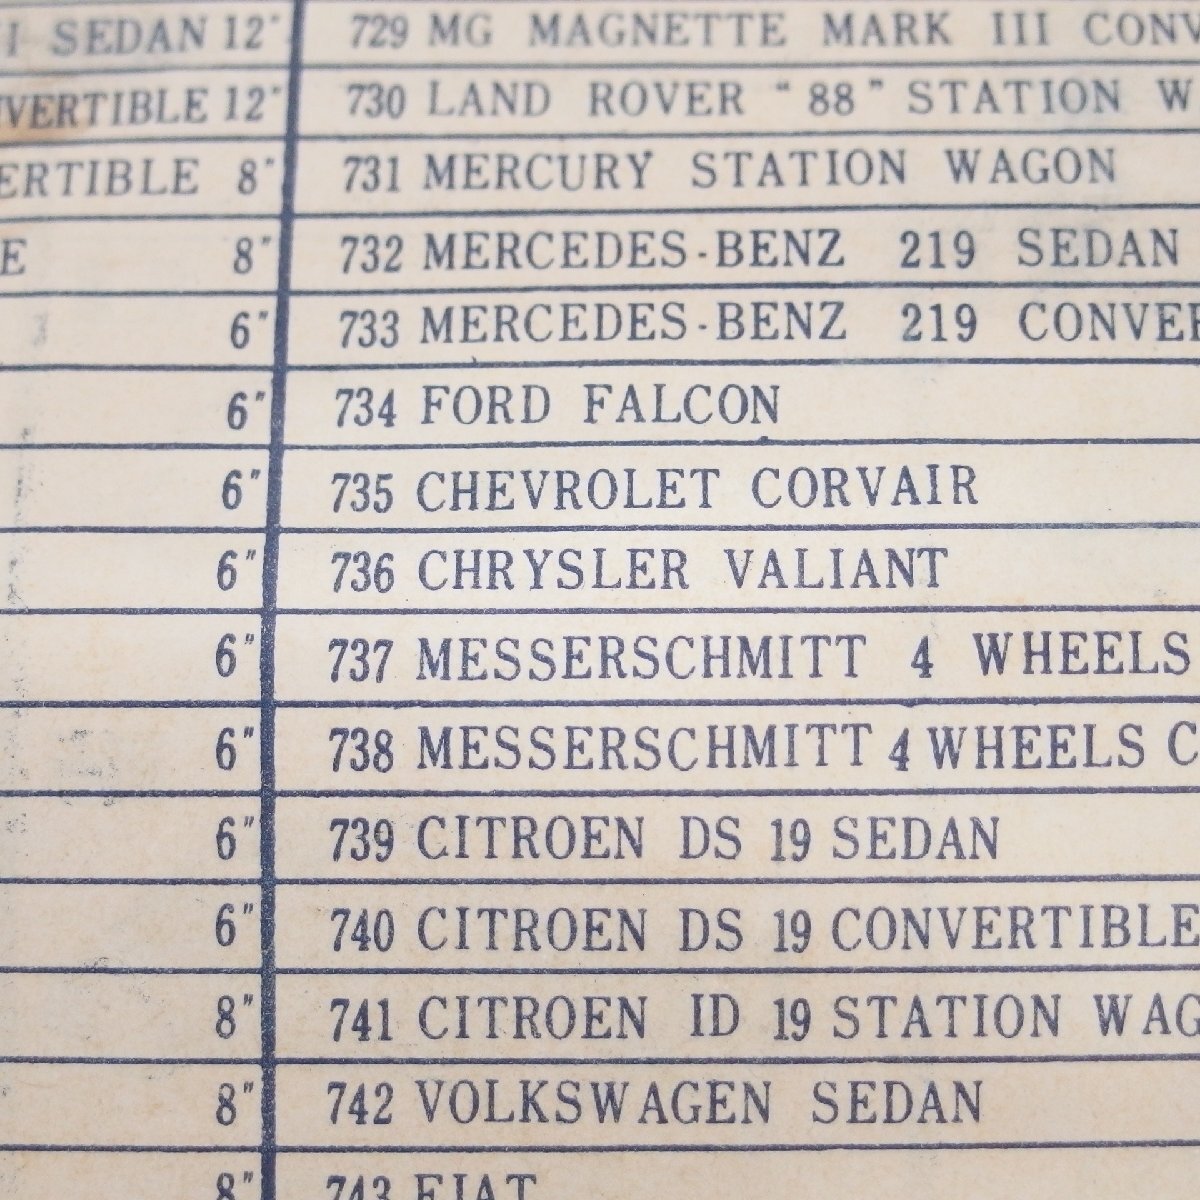  старый Bandai производства *Chrysler Valiant Sedan. плата магазин B.C.BANDAI 1960 годы изначальный с коробкой закончившийся товар редкий товар * Vintage товар 